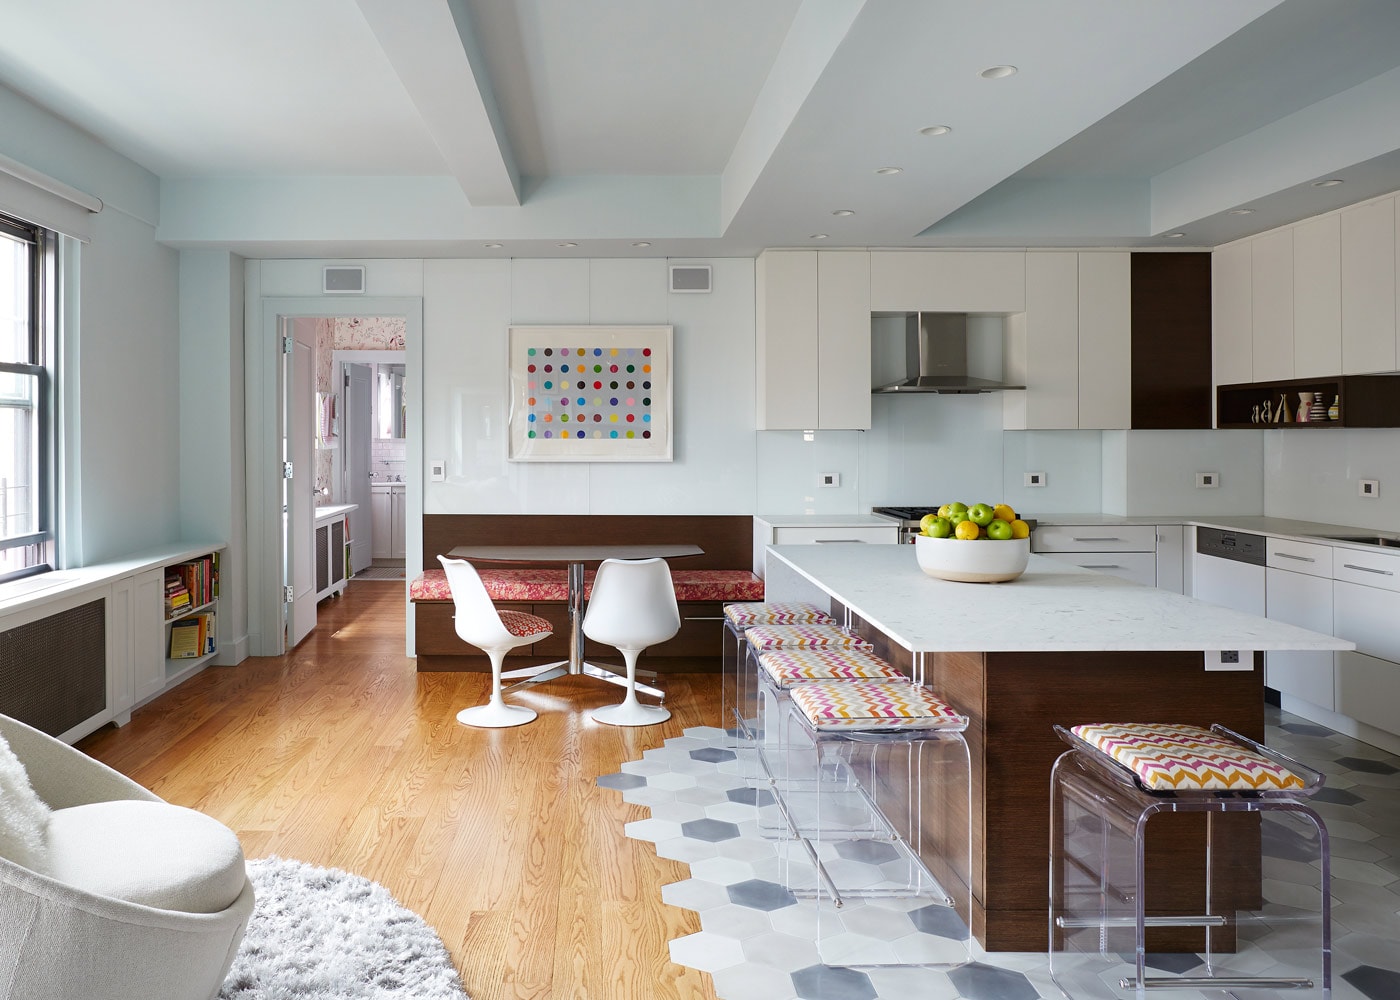 Greenwich Village apartment kitchen design by Annette Jaffe Interiors